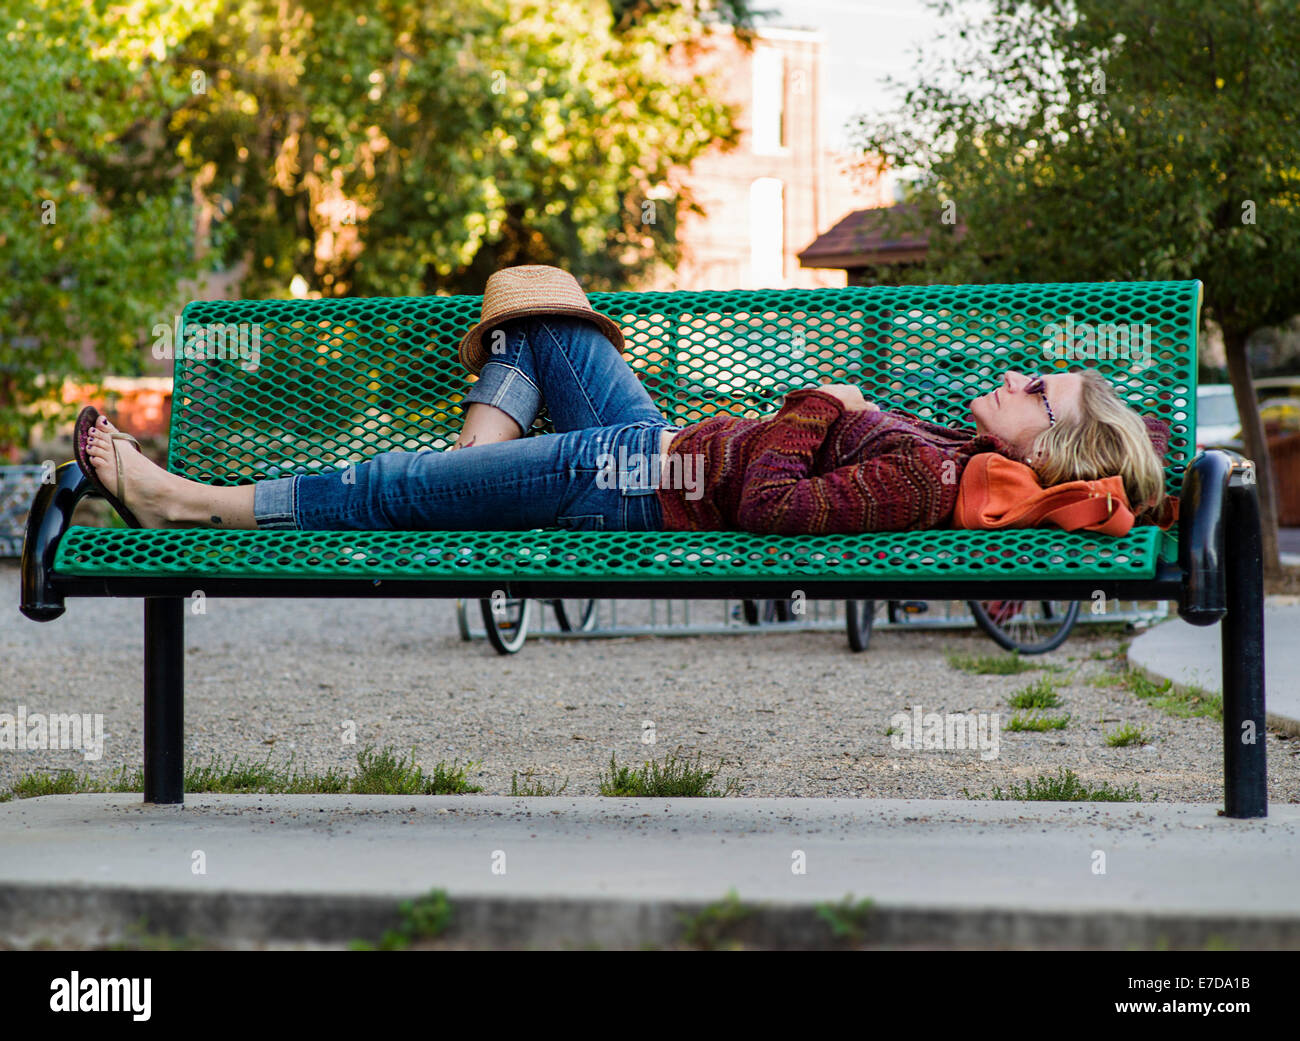 Woman sleeping on park bench, Arkansas River, Salida, Colorado, USA Stock Photo